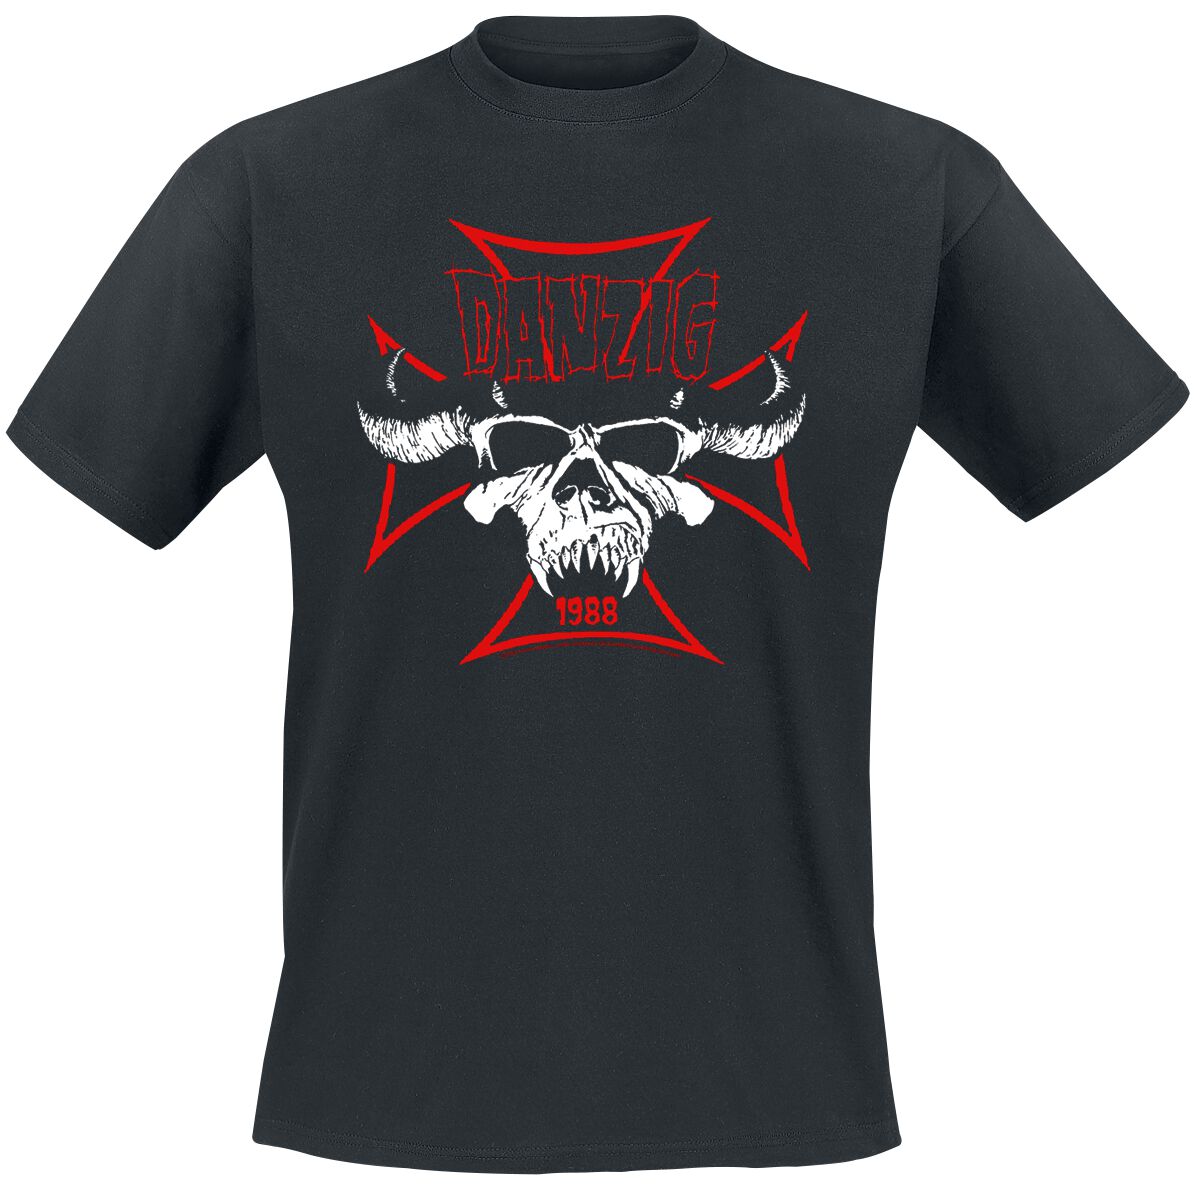 Danzig T-Shirt - Cross Skull - S bis 3XL - für Männer - Größe S - schwarz  - Lizenziertes Merchandise!